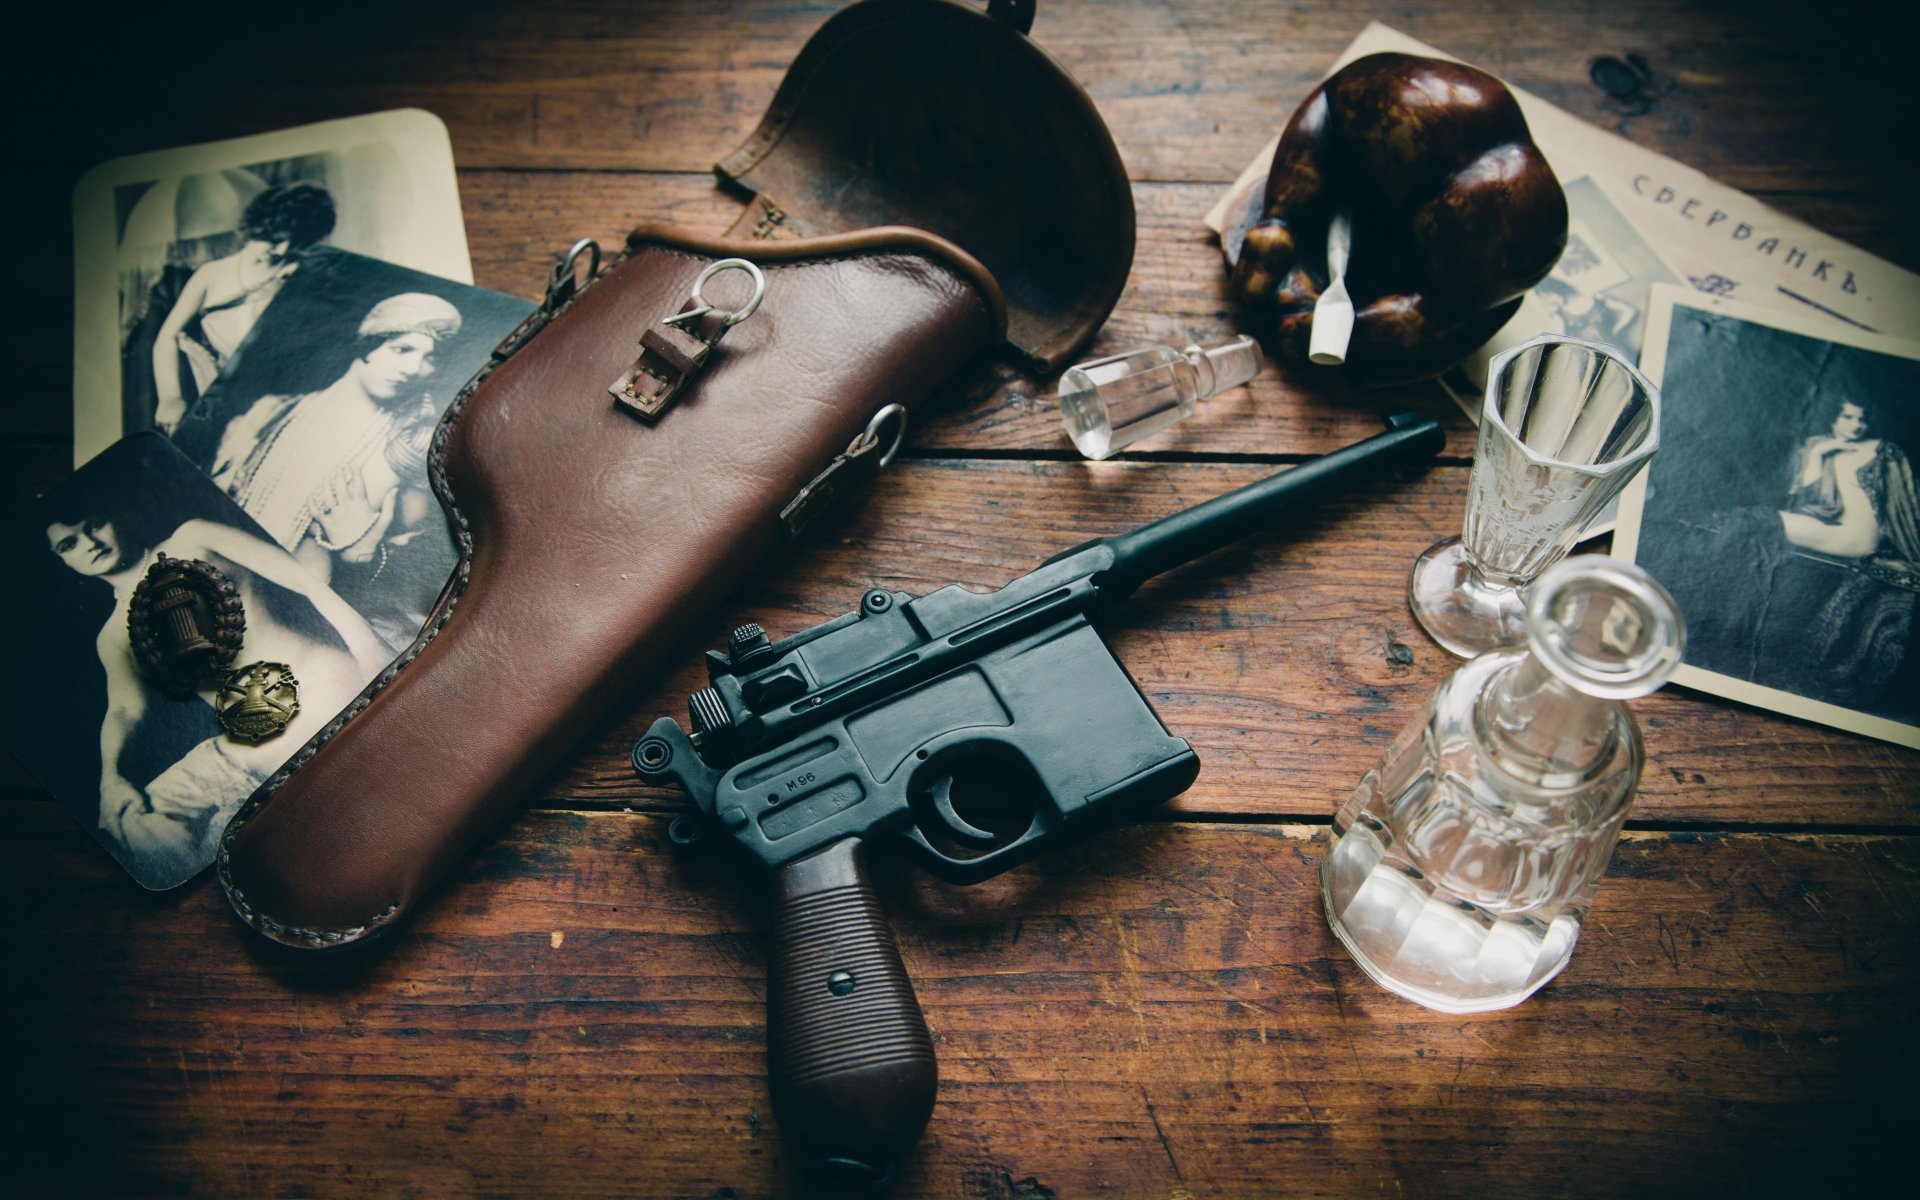 маузер с96 «маузер» магазинный пистолет кобура оружие стол фото рюмки пепельница